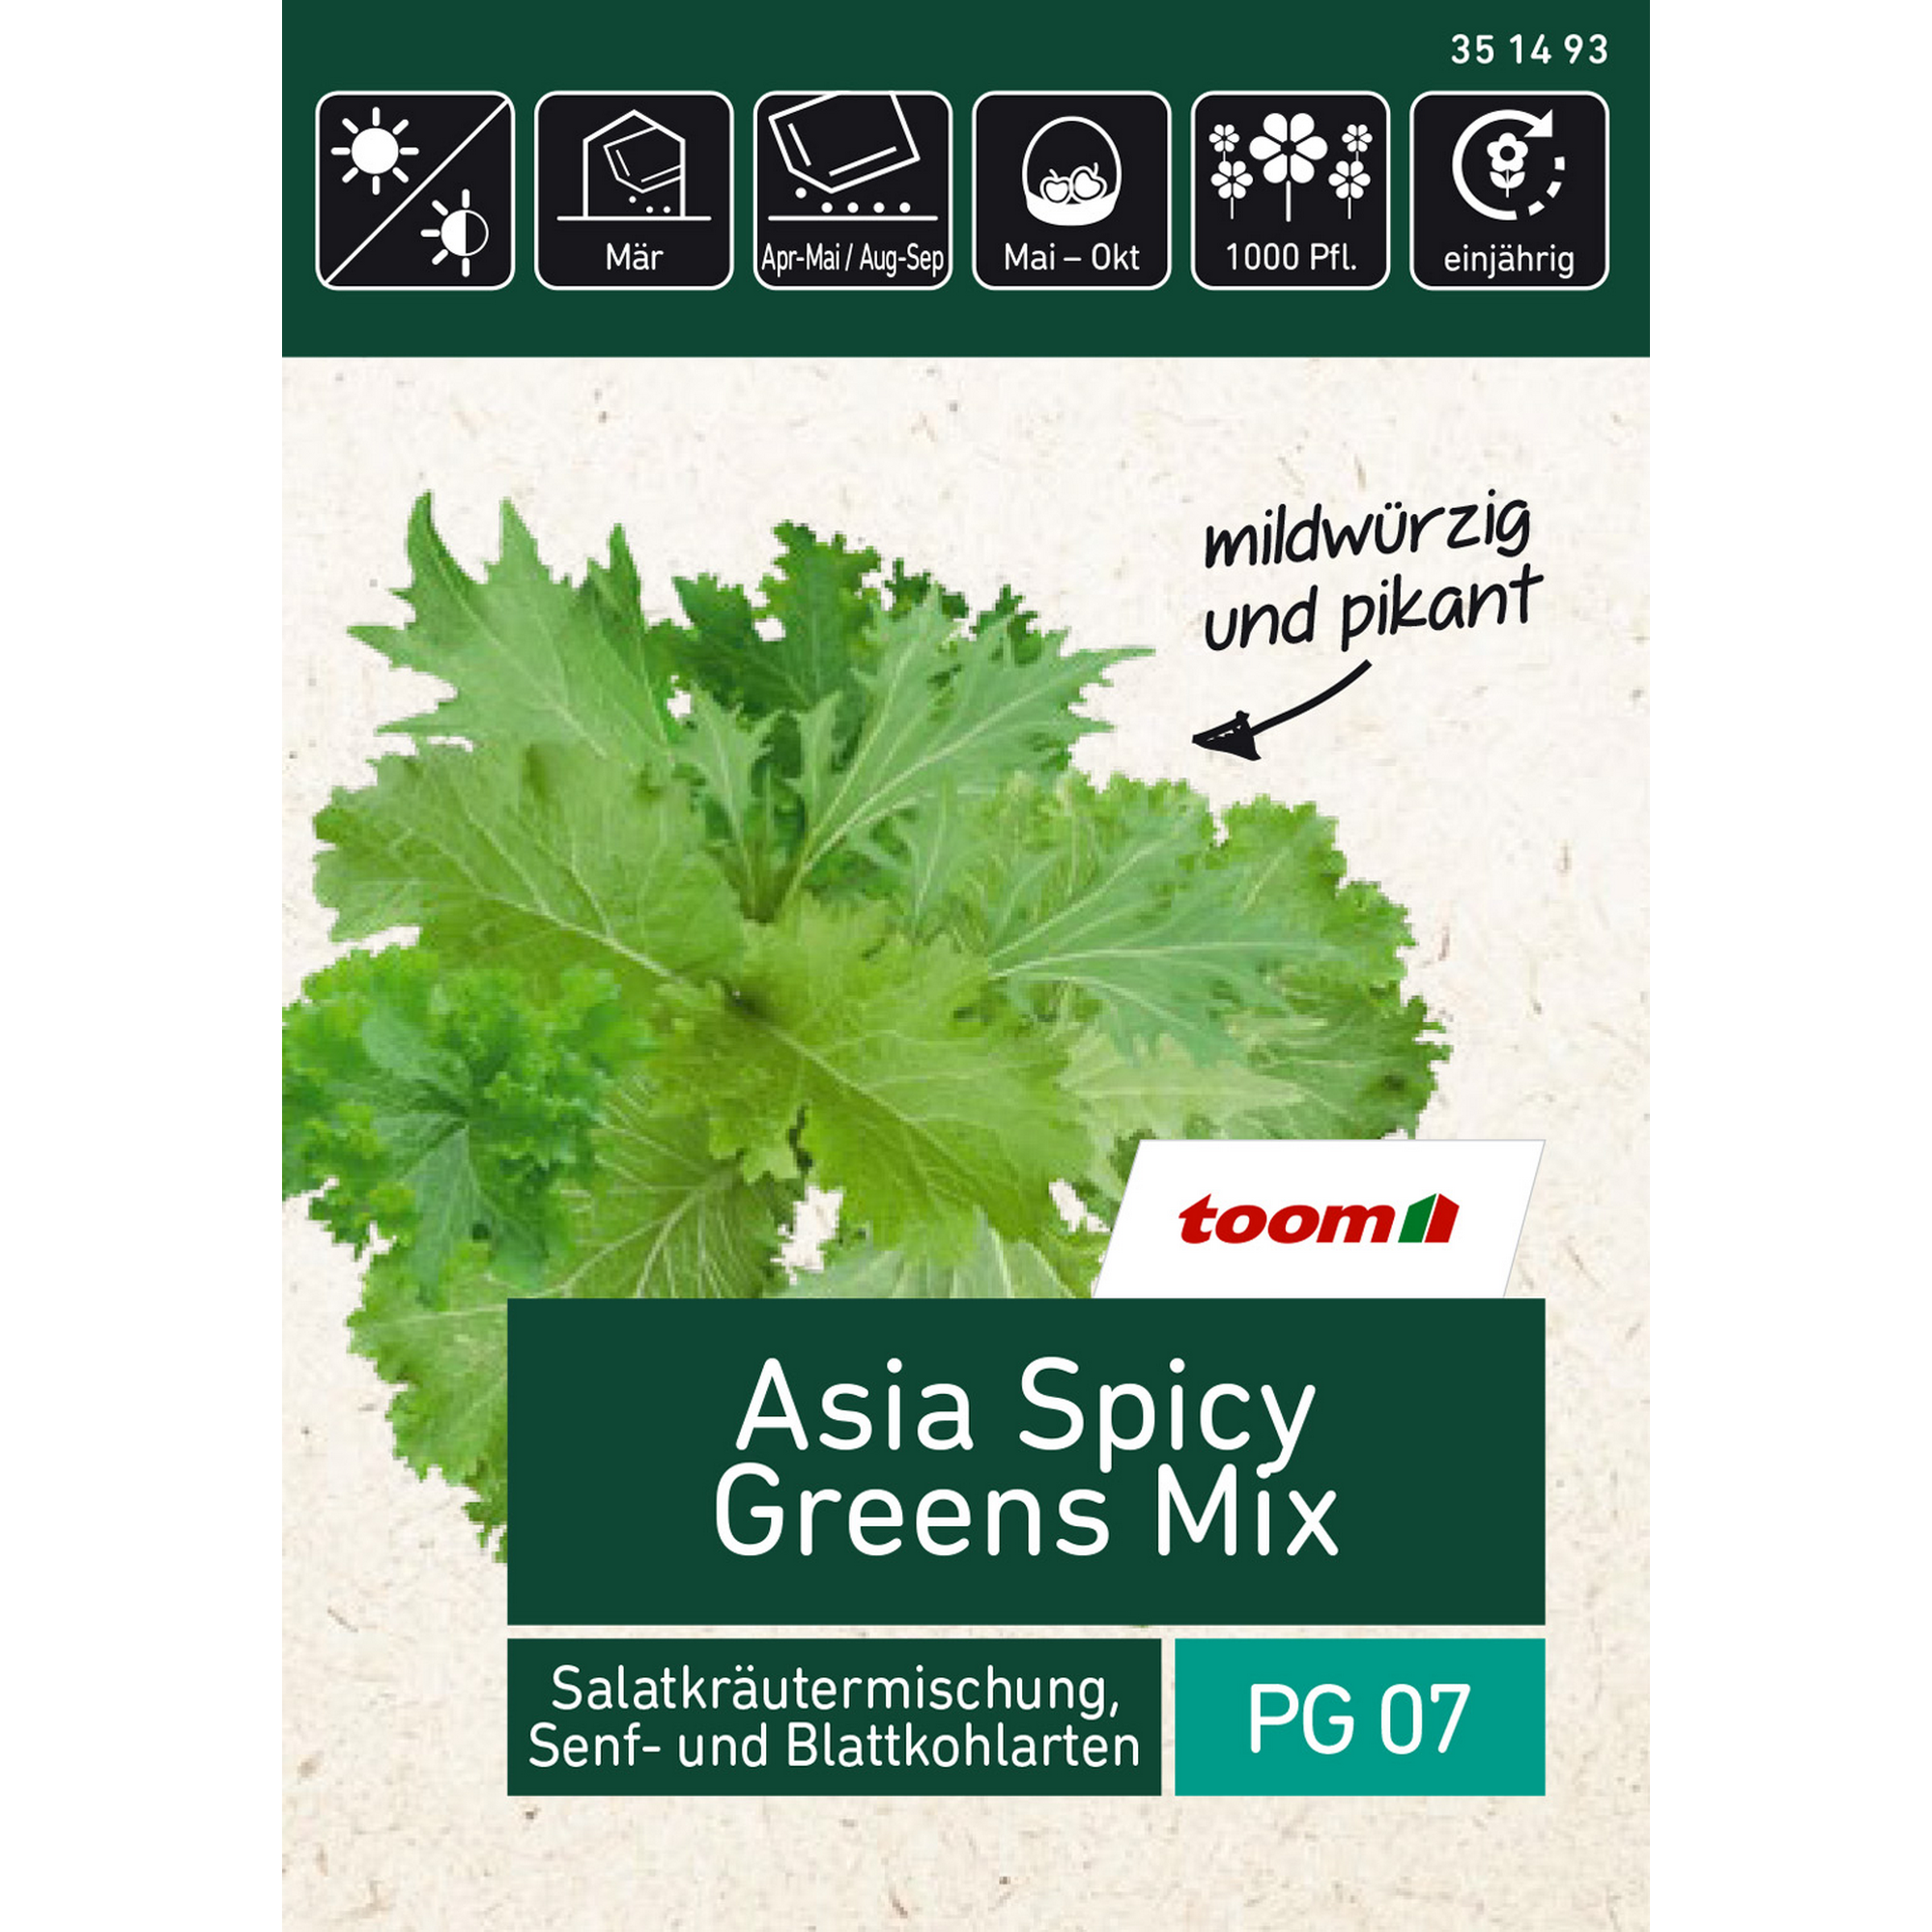 Asia Spicy Greens Mix Salatkräutermischung, Senf- und Blattkohlarten + product picture